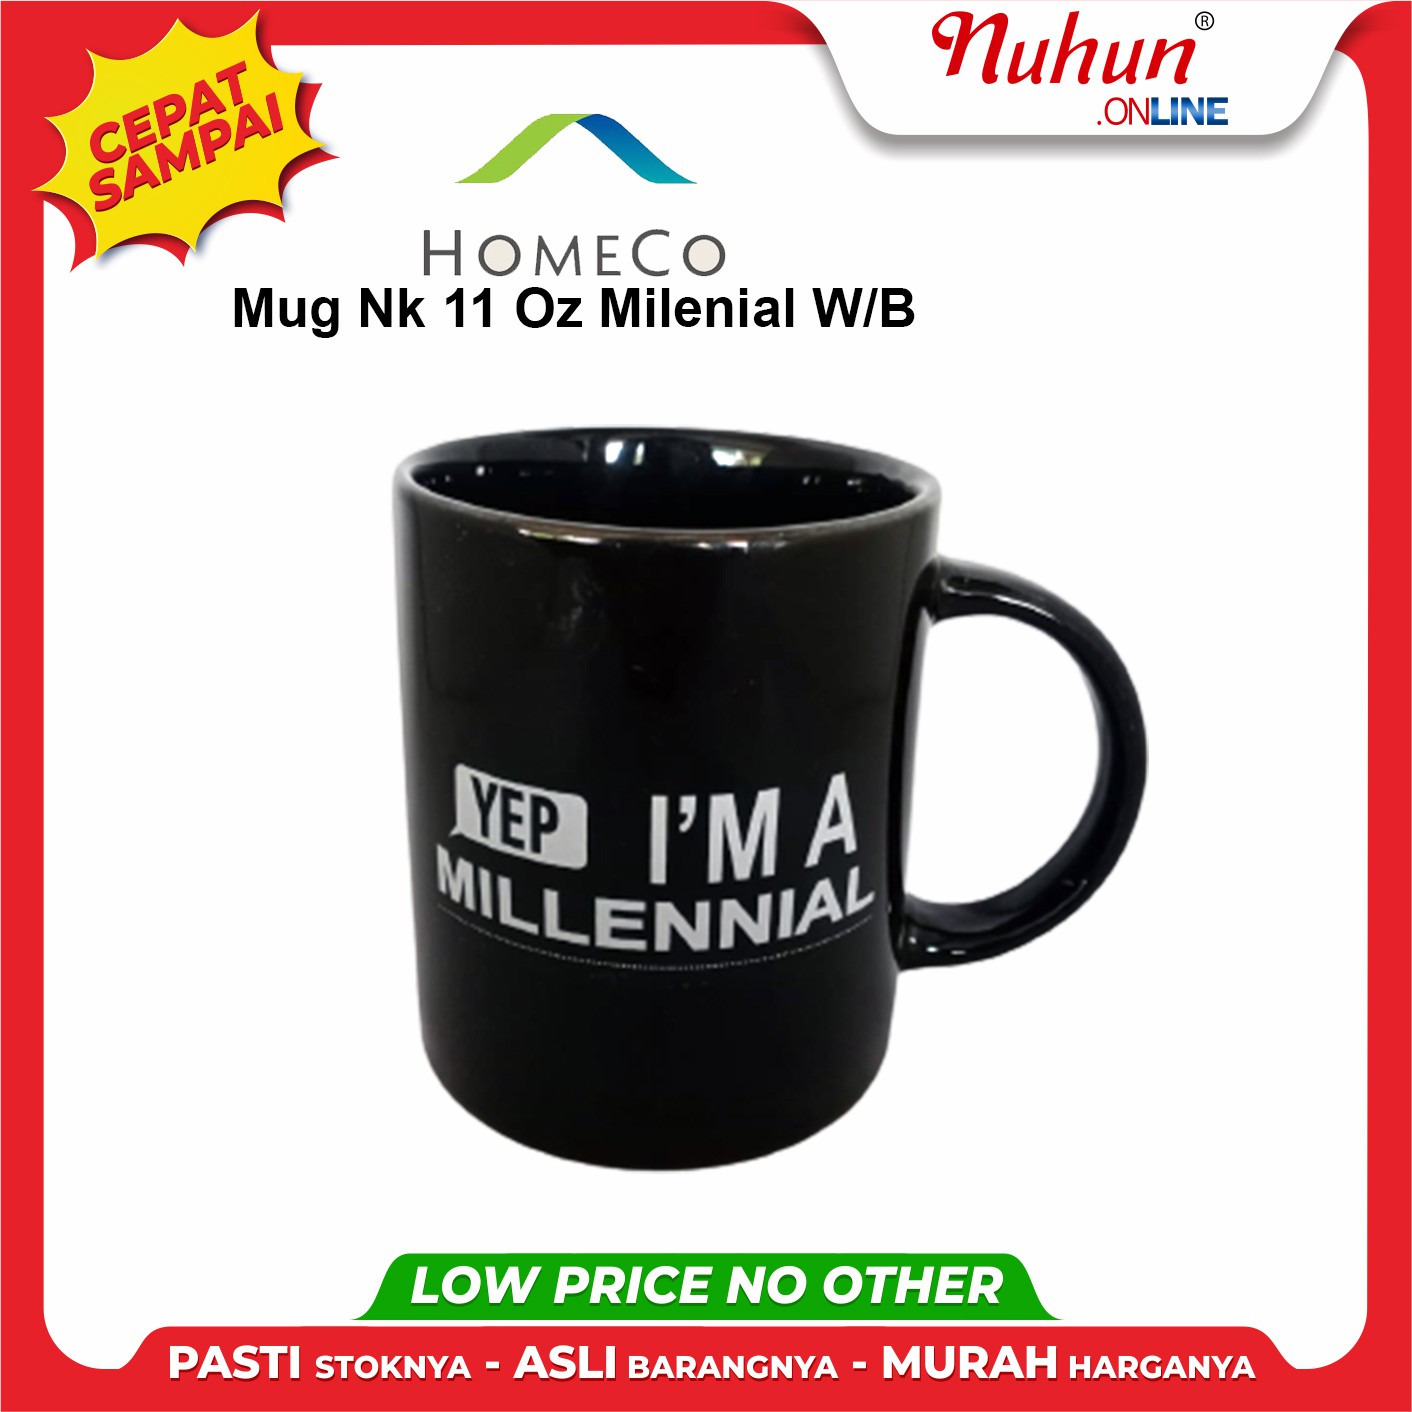 Mug Nk 11 Oz Milenial W B